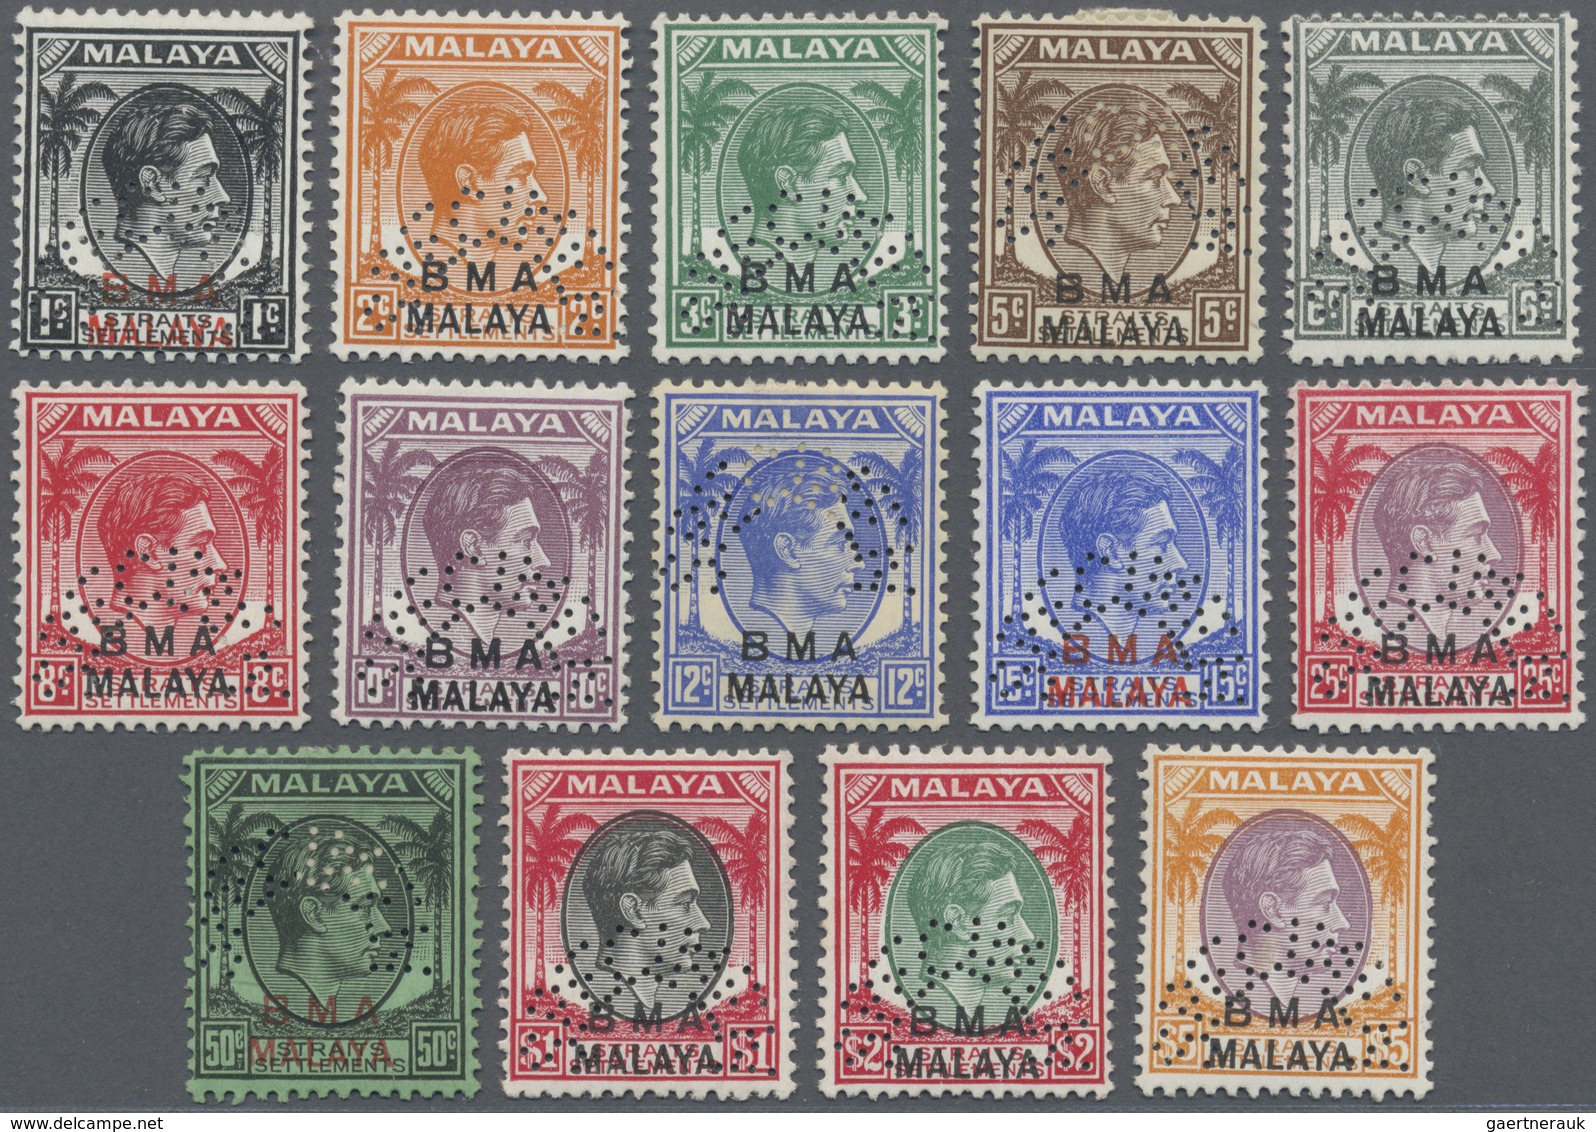 Malaiische Staaten - Britische Militärverwaltung: 1945-48 KGVI. Ovpt. "BMA/MALAYA" Complete Set Of 1 - Malaya (British Military Administration)